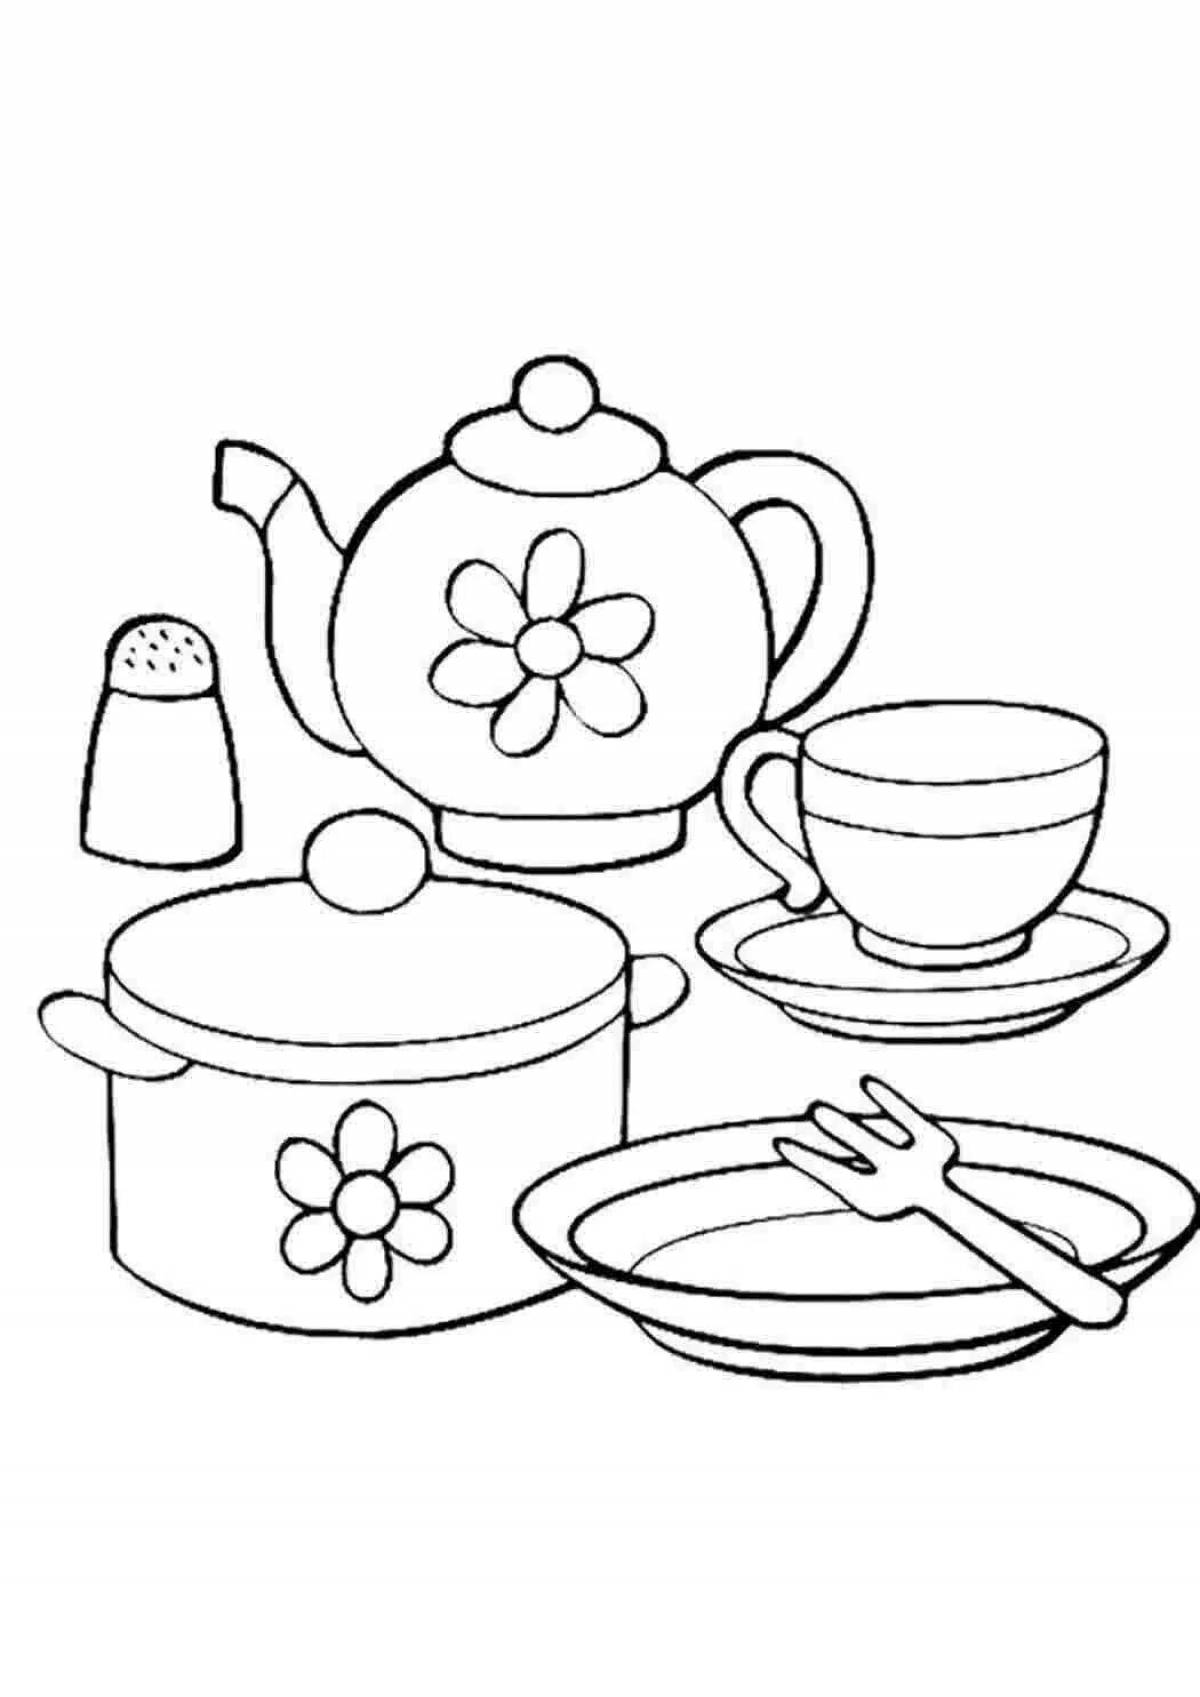 Coloring tea set